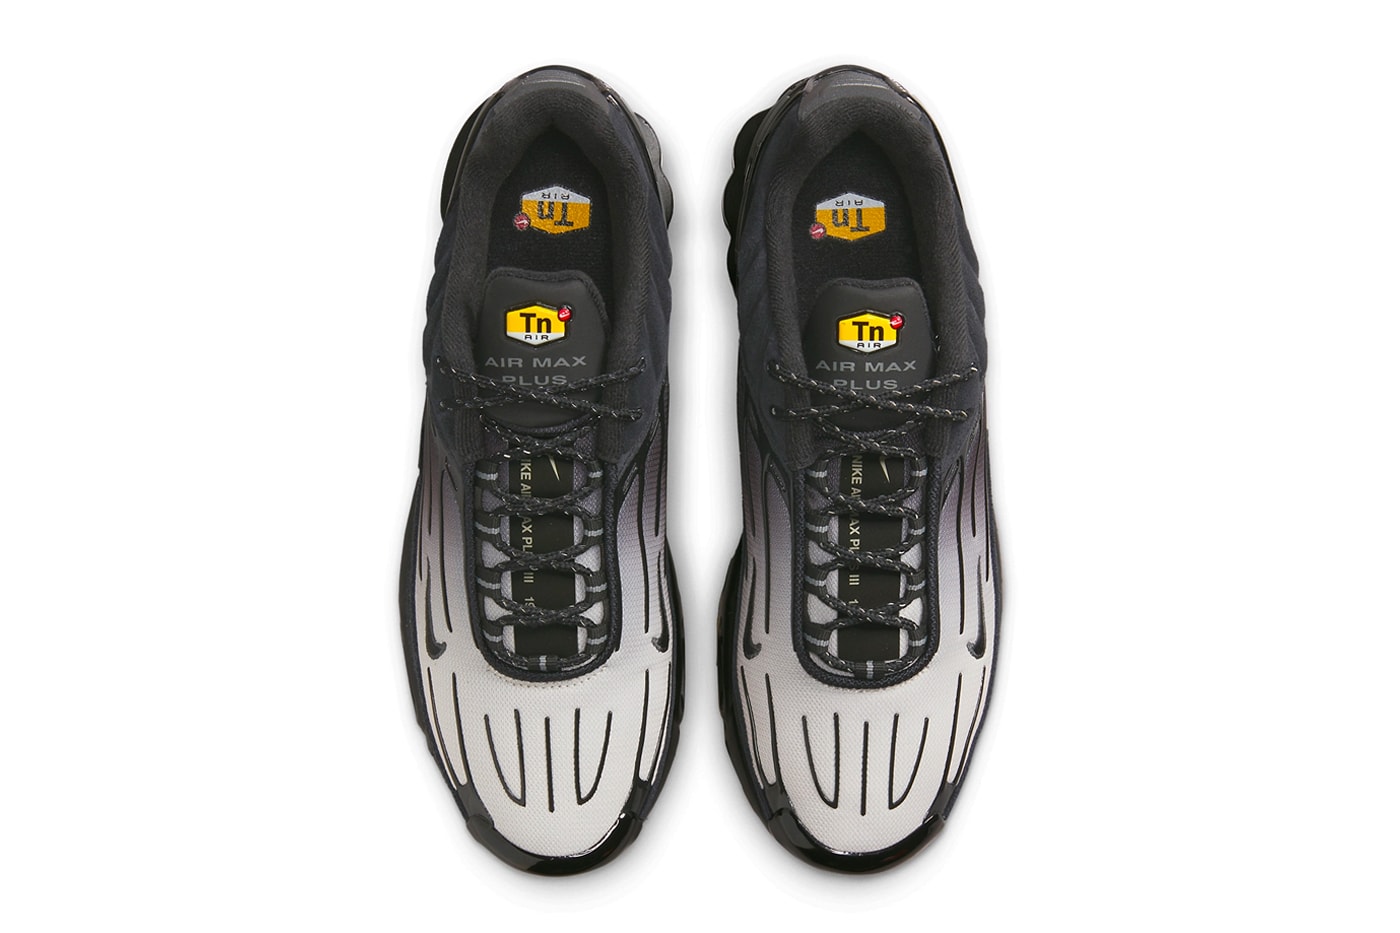 ナイキエアマックスプラス3にモノトーンでまとめ上げた新色モデルがスタンバイ Nike Air Max Plus 3 Surfaces in "Black/Gum" FV0386-001 swoosh technical shoe greyscale upper ombre hues dark black comfort tuned air